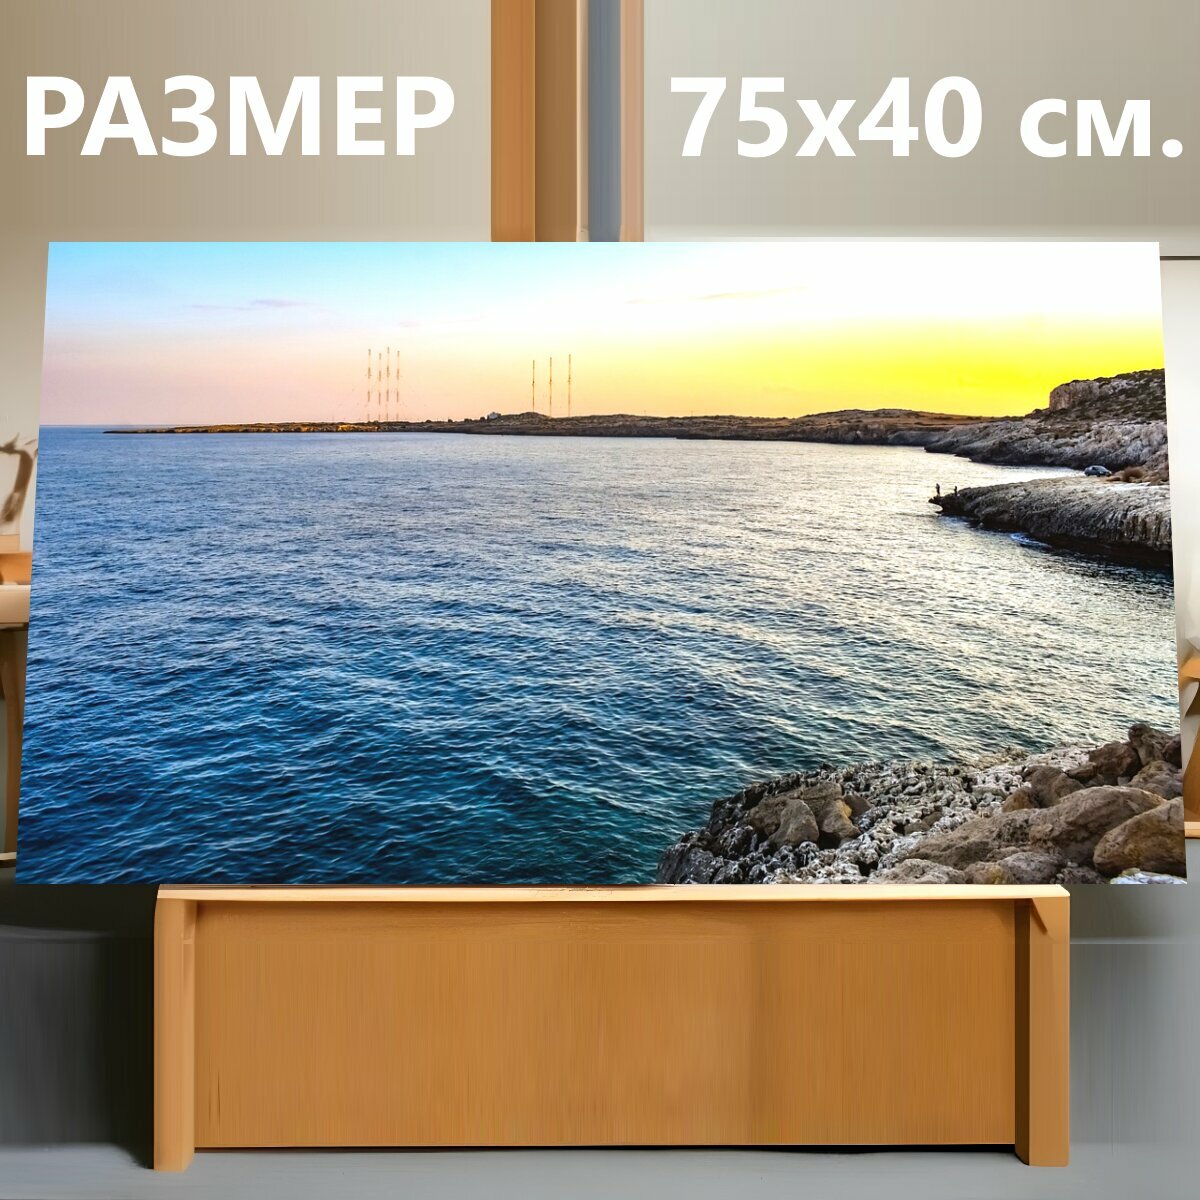 Картина на холсте "Море, морской берег, приморский" на подрамнике 75х40 см. для интерьера